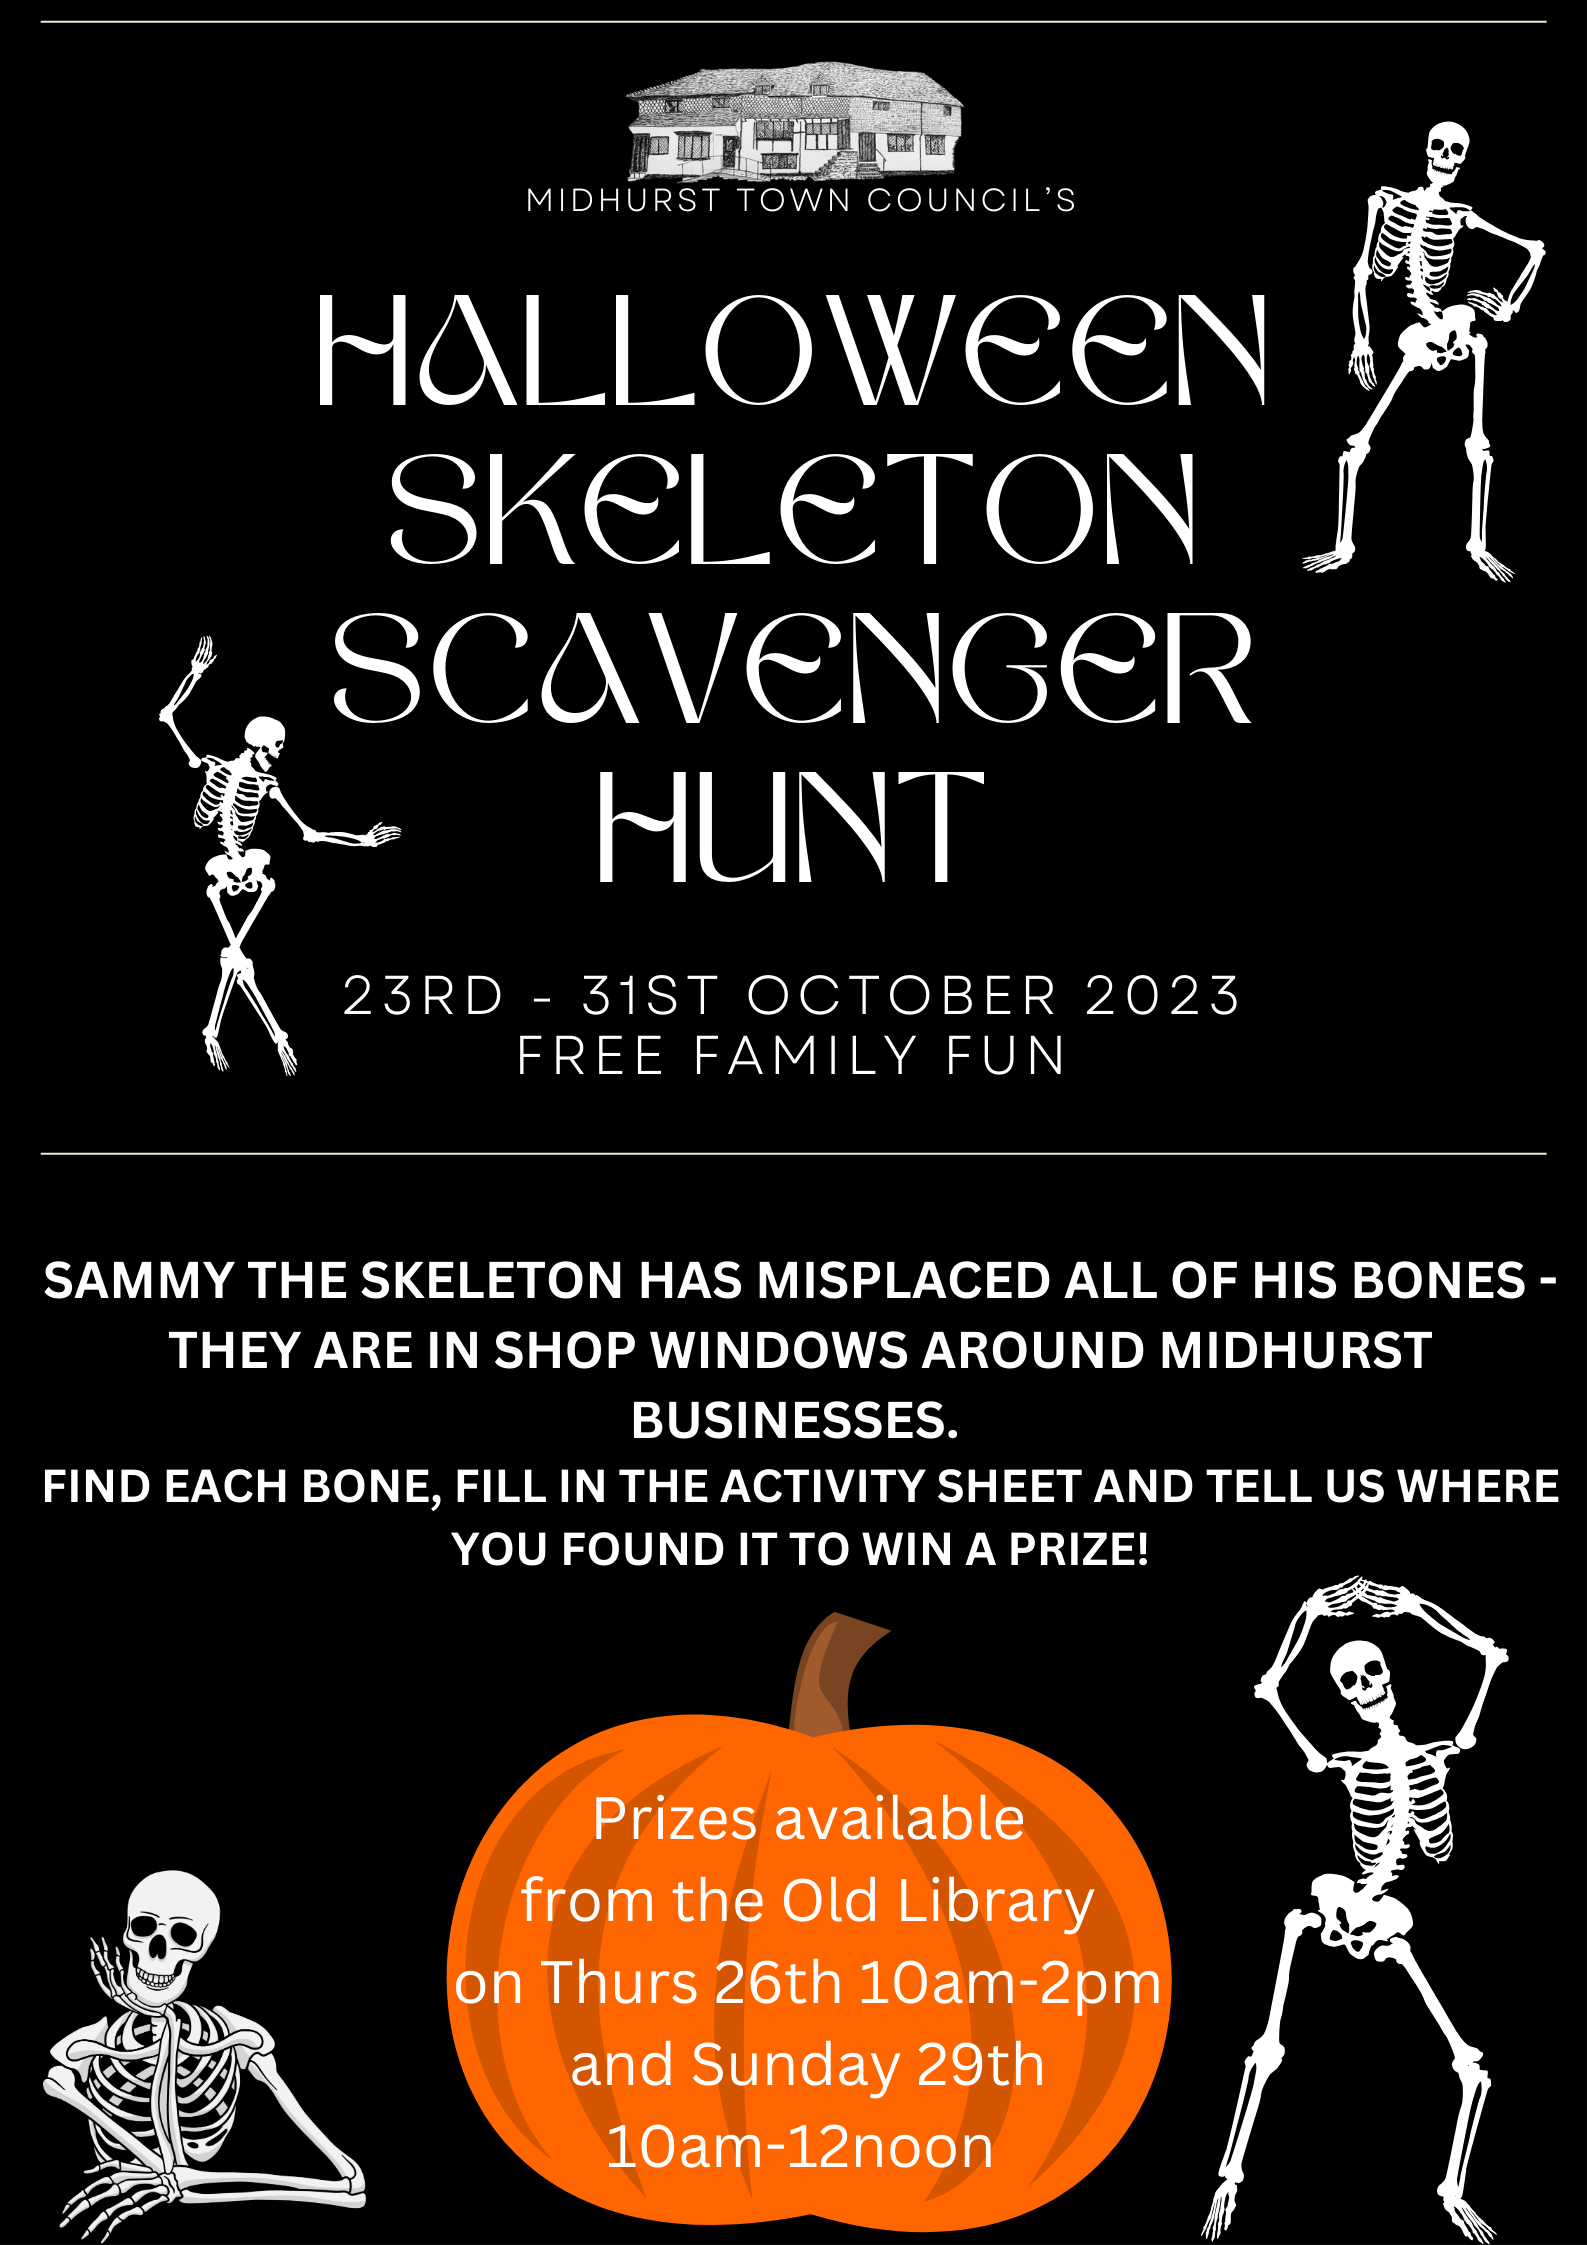 Halloween Scavenger Hunt